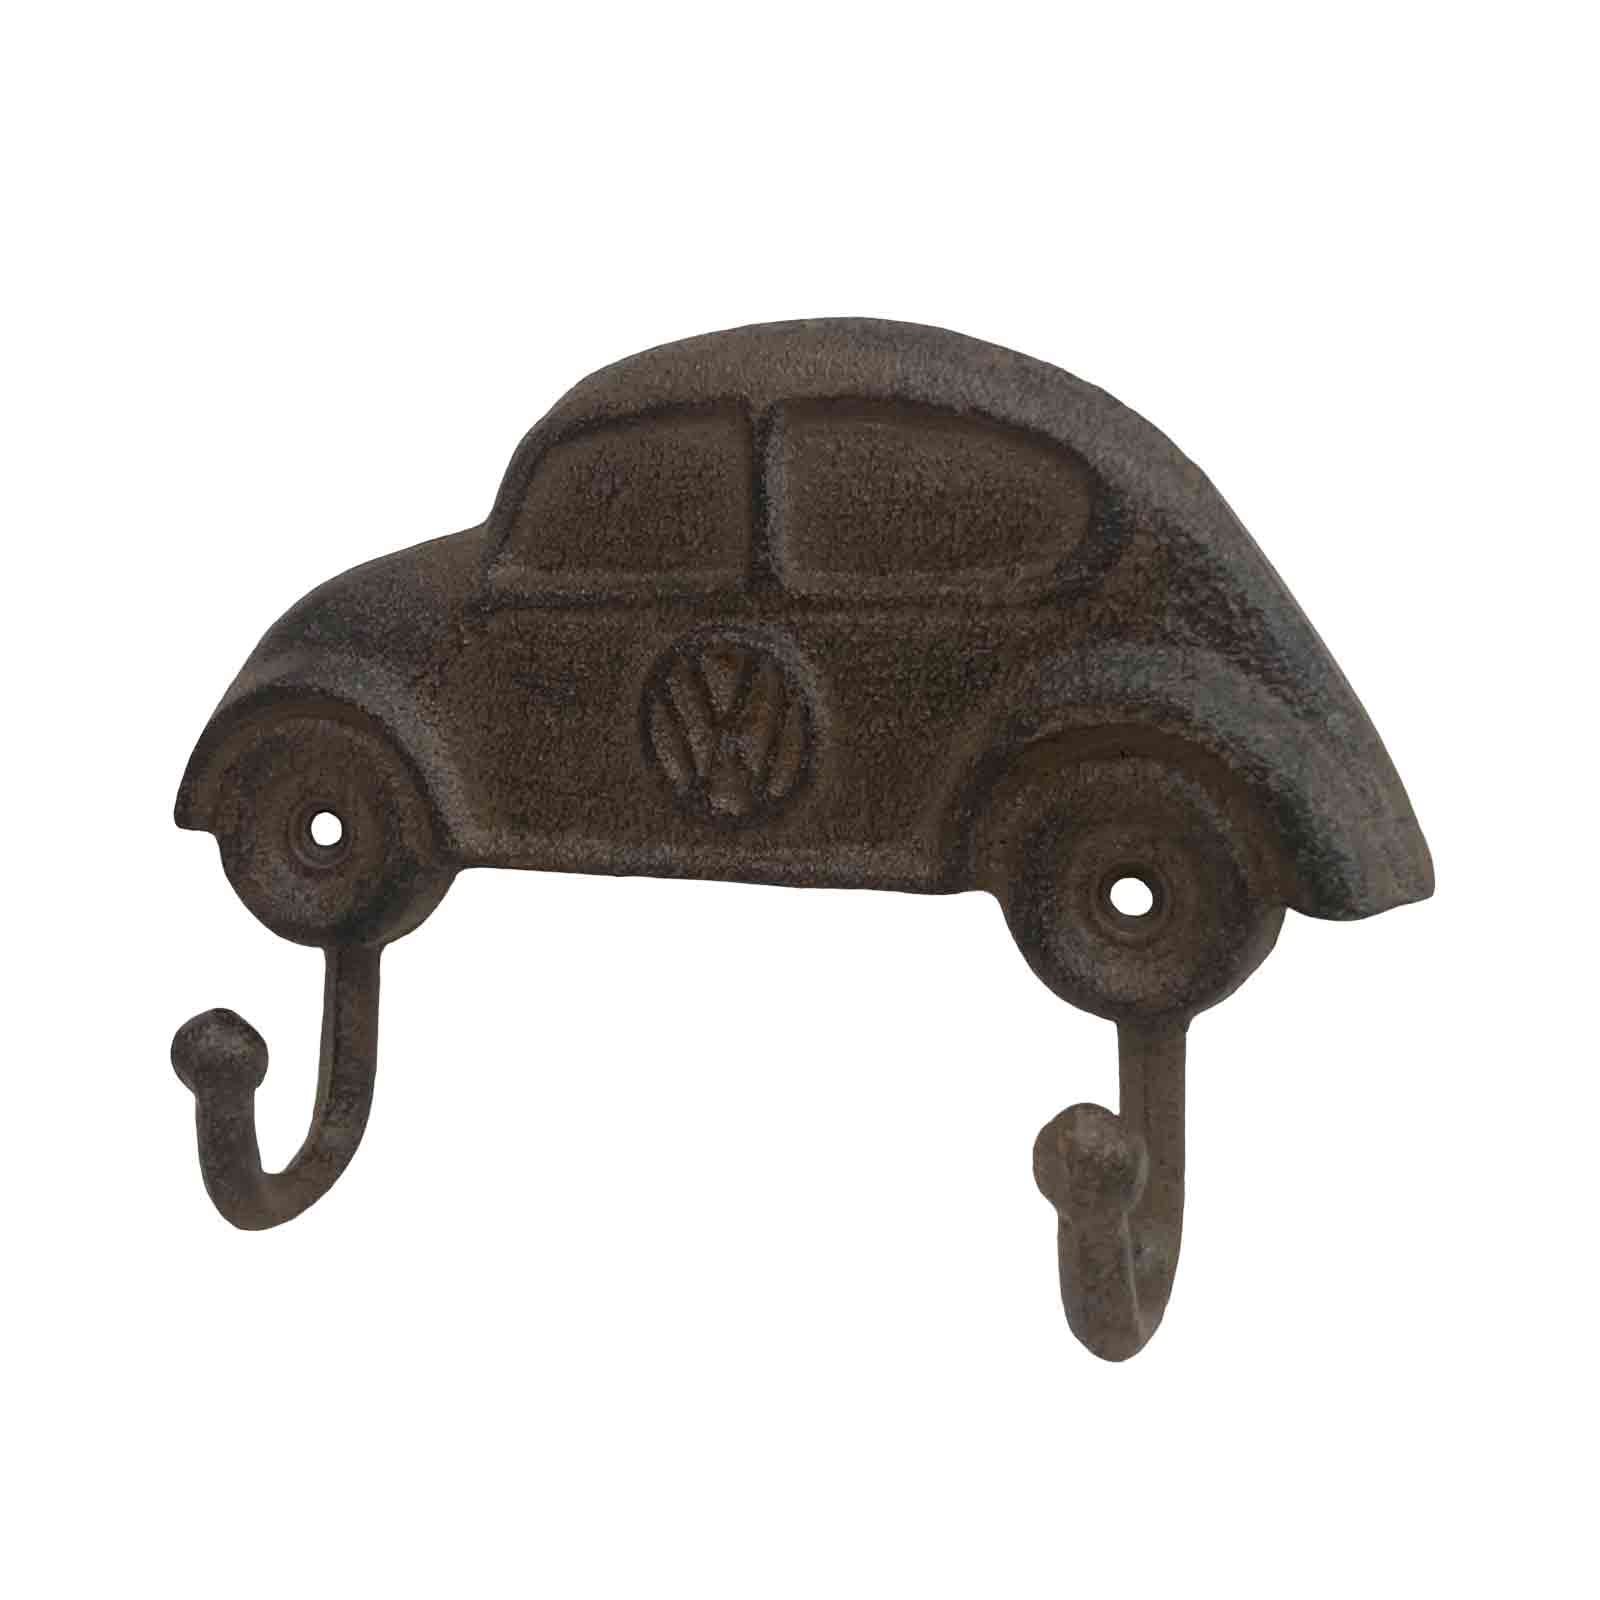 Volkswagen - VW Beetle Cast Iron Metal Wall Hook